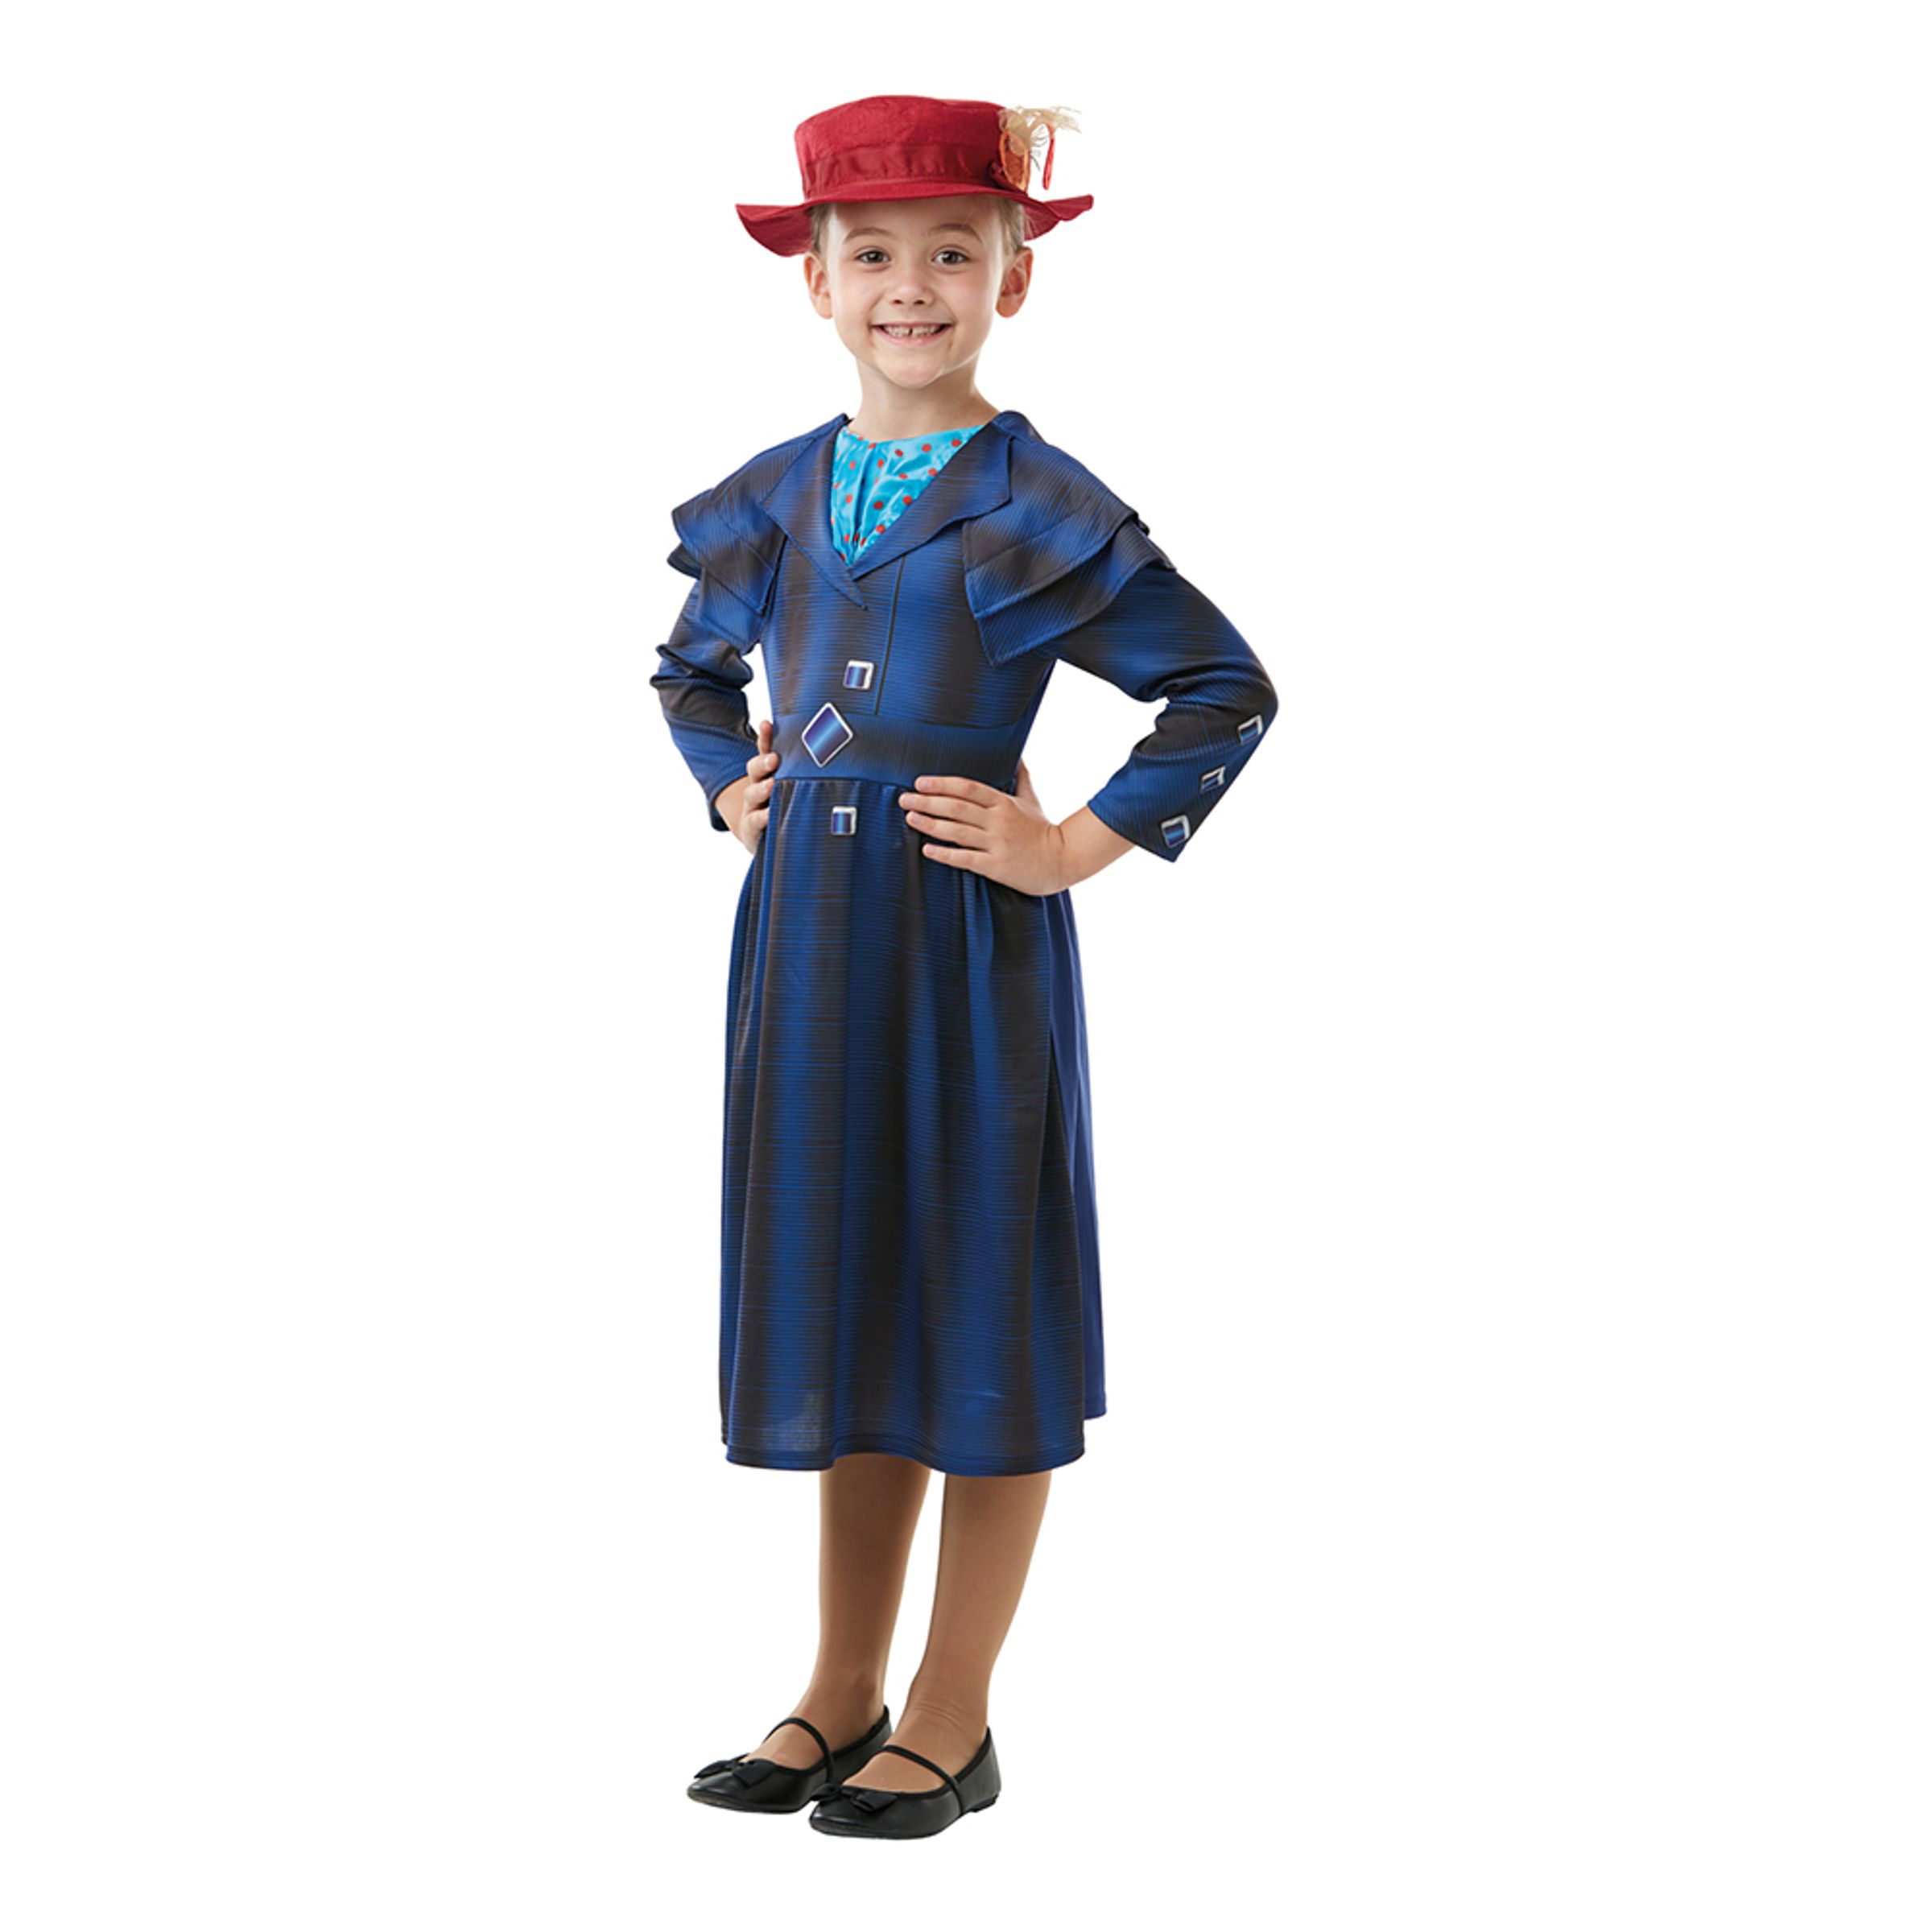 Mary Poppins Returns Barn Maskeraddräkt - Small